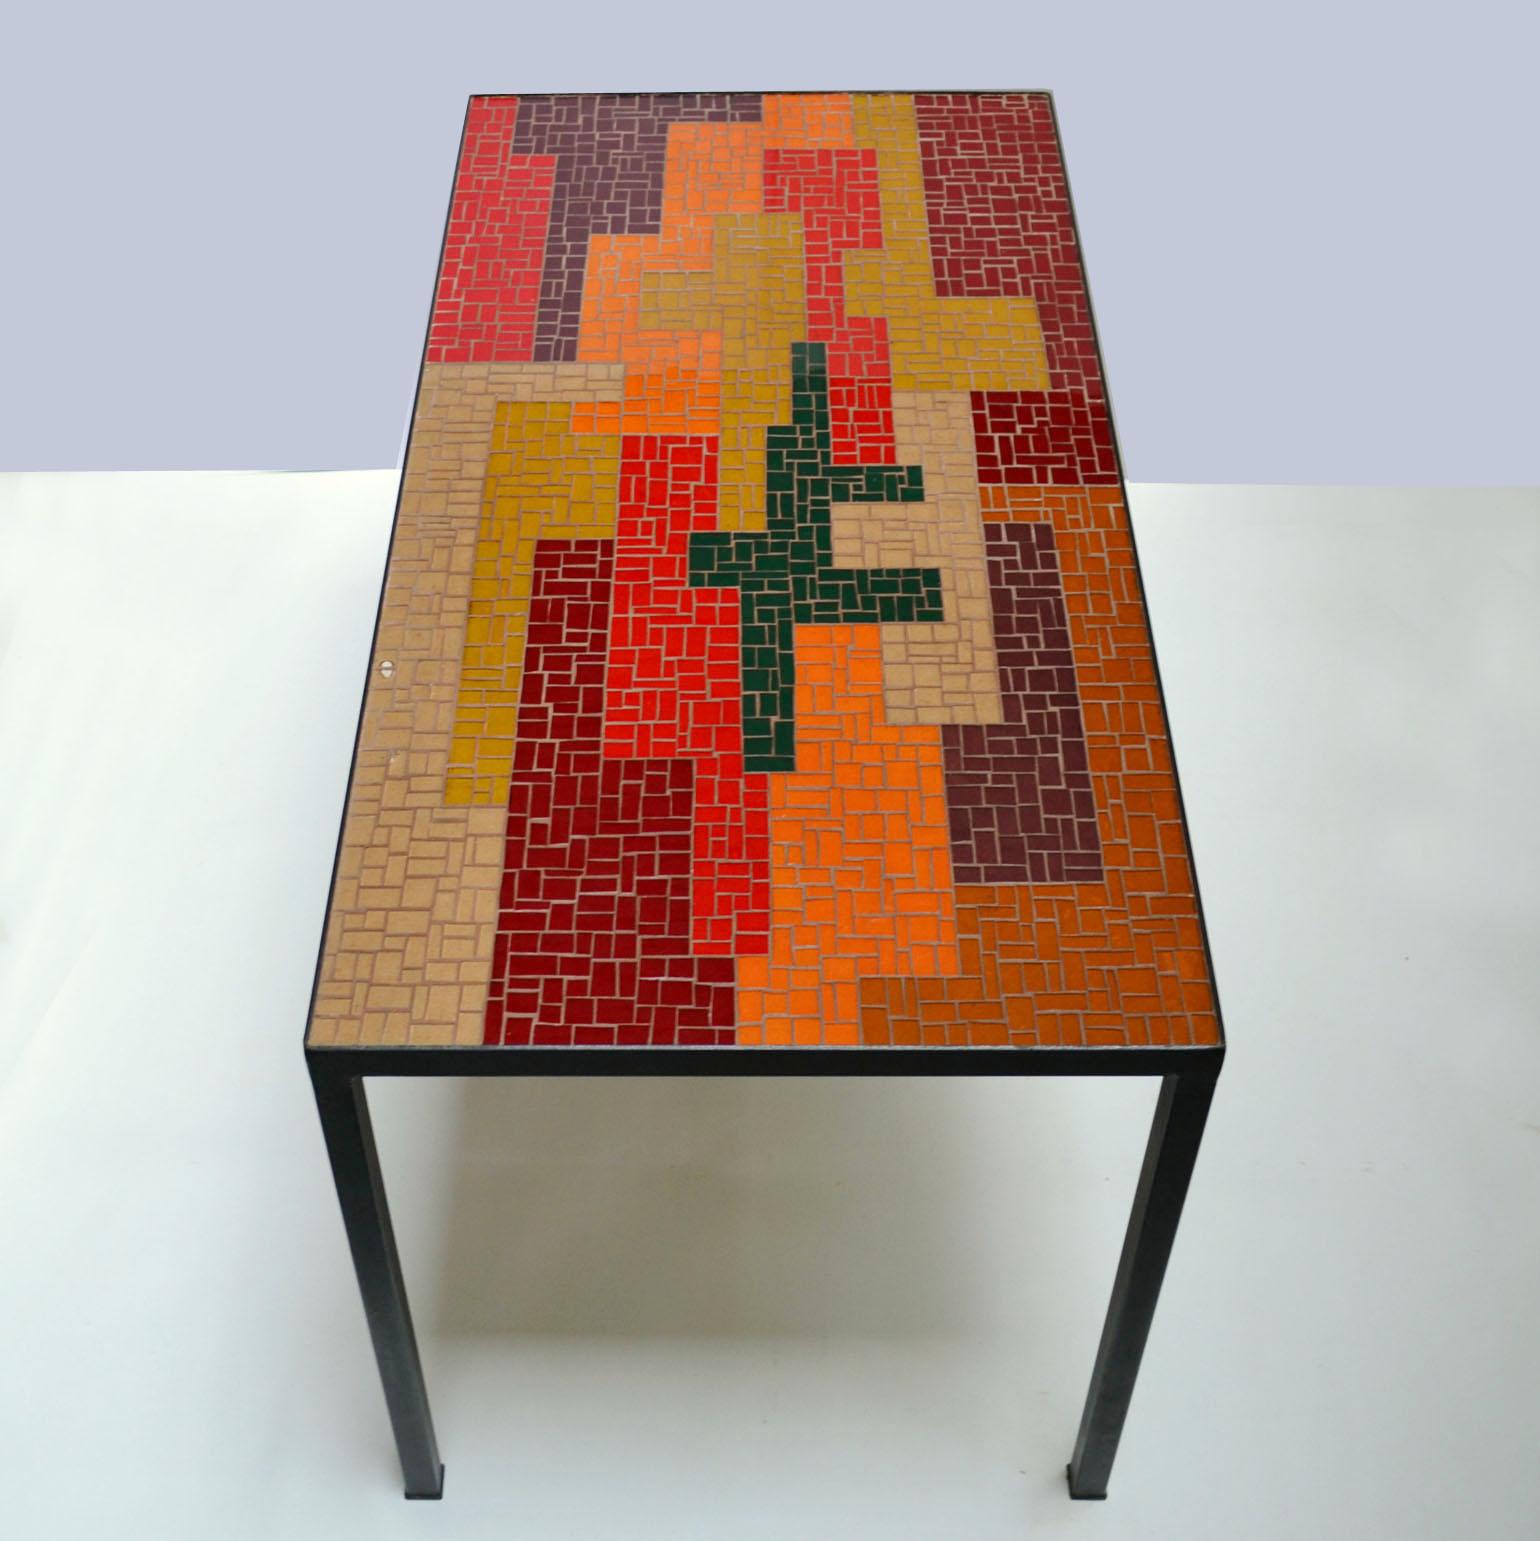 Table basse en mosaïque avec un design abstrait fort une palette bien équilibrée en noir, rouge, orange saumon et ocre des pièces de verre rectangulaires et carrées créant un motif frappant dans les directions horizontales et verticales. L'élégant